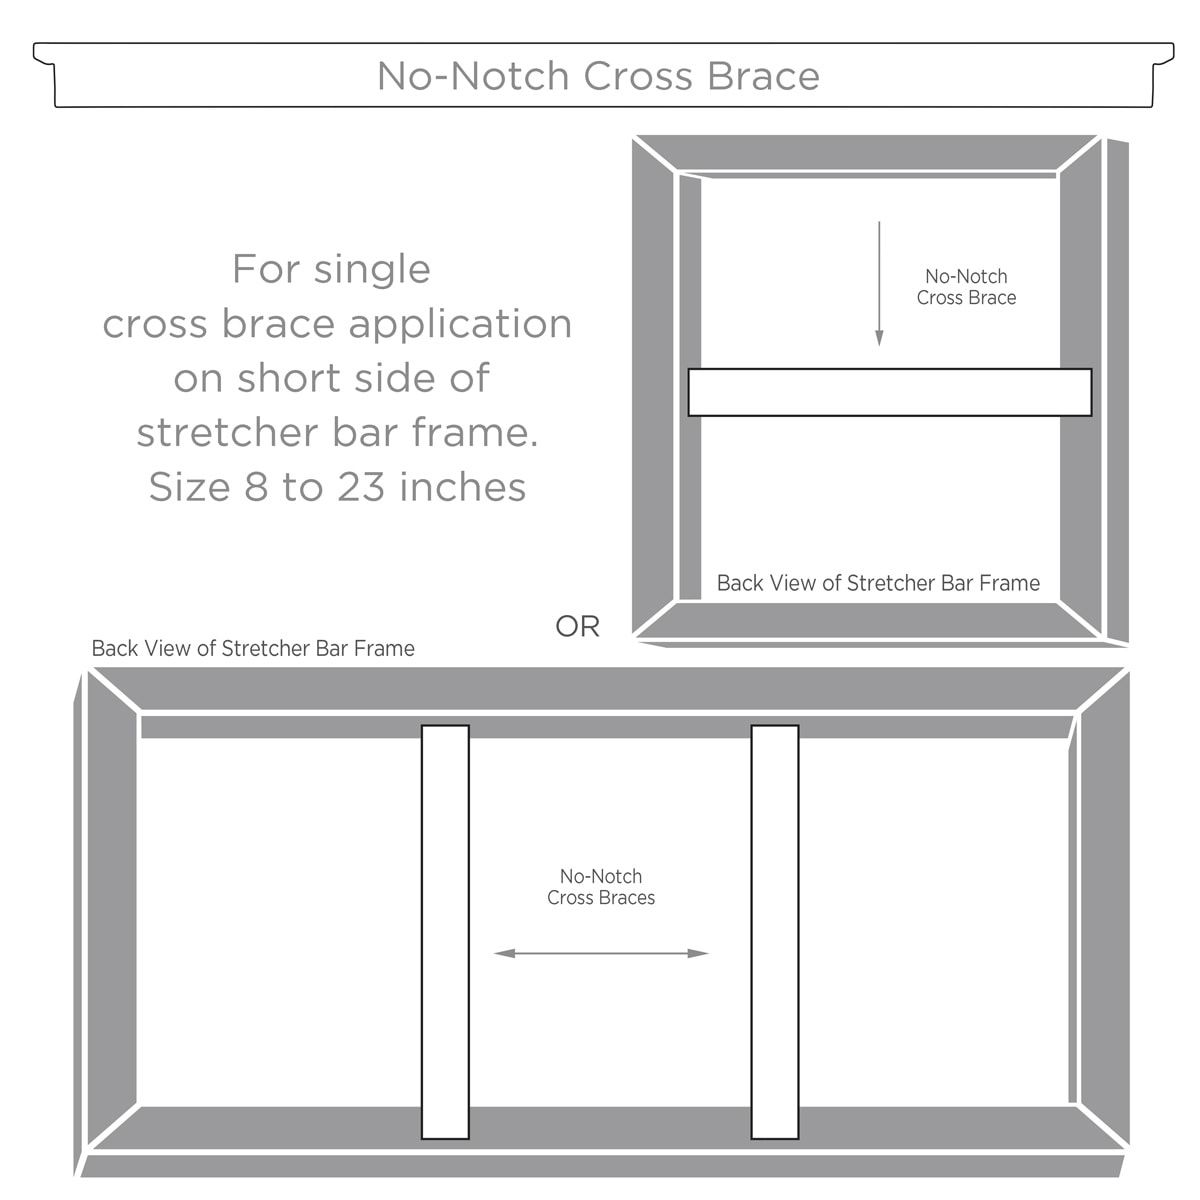 No-Notch cross braces